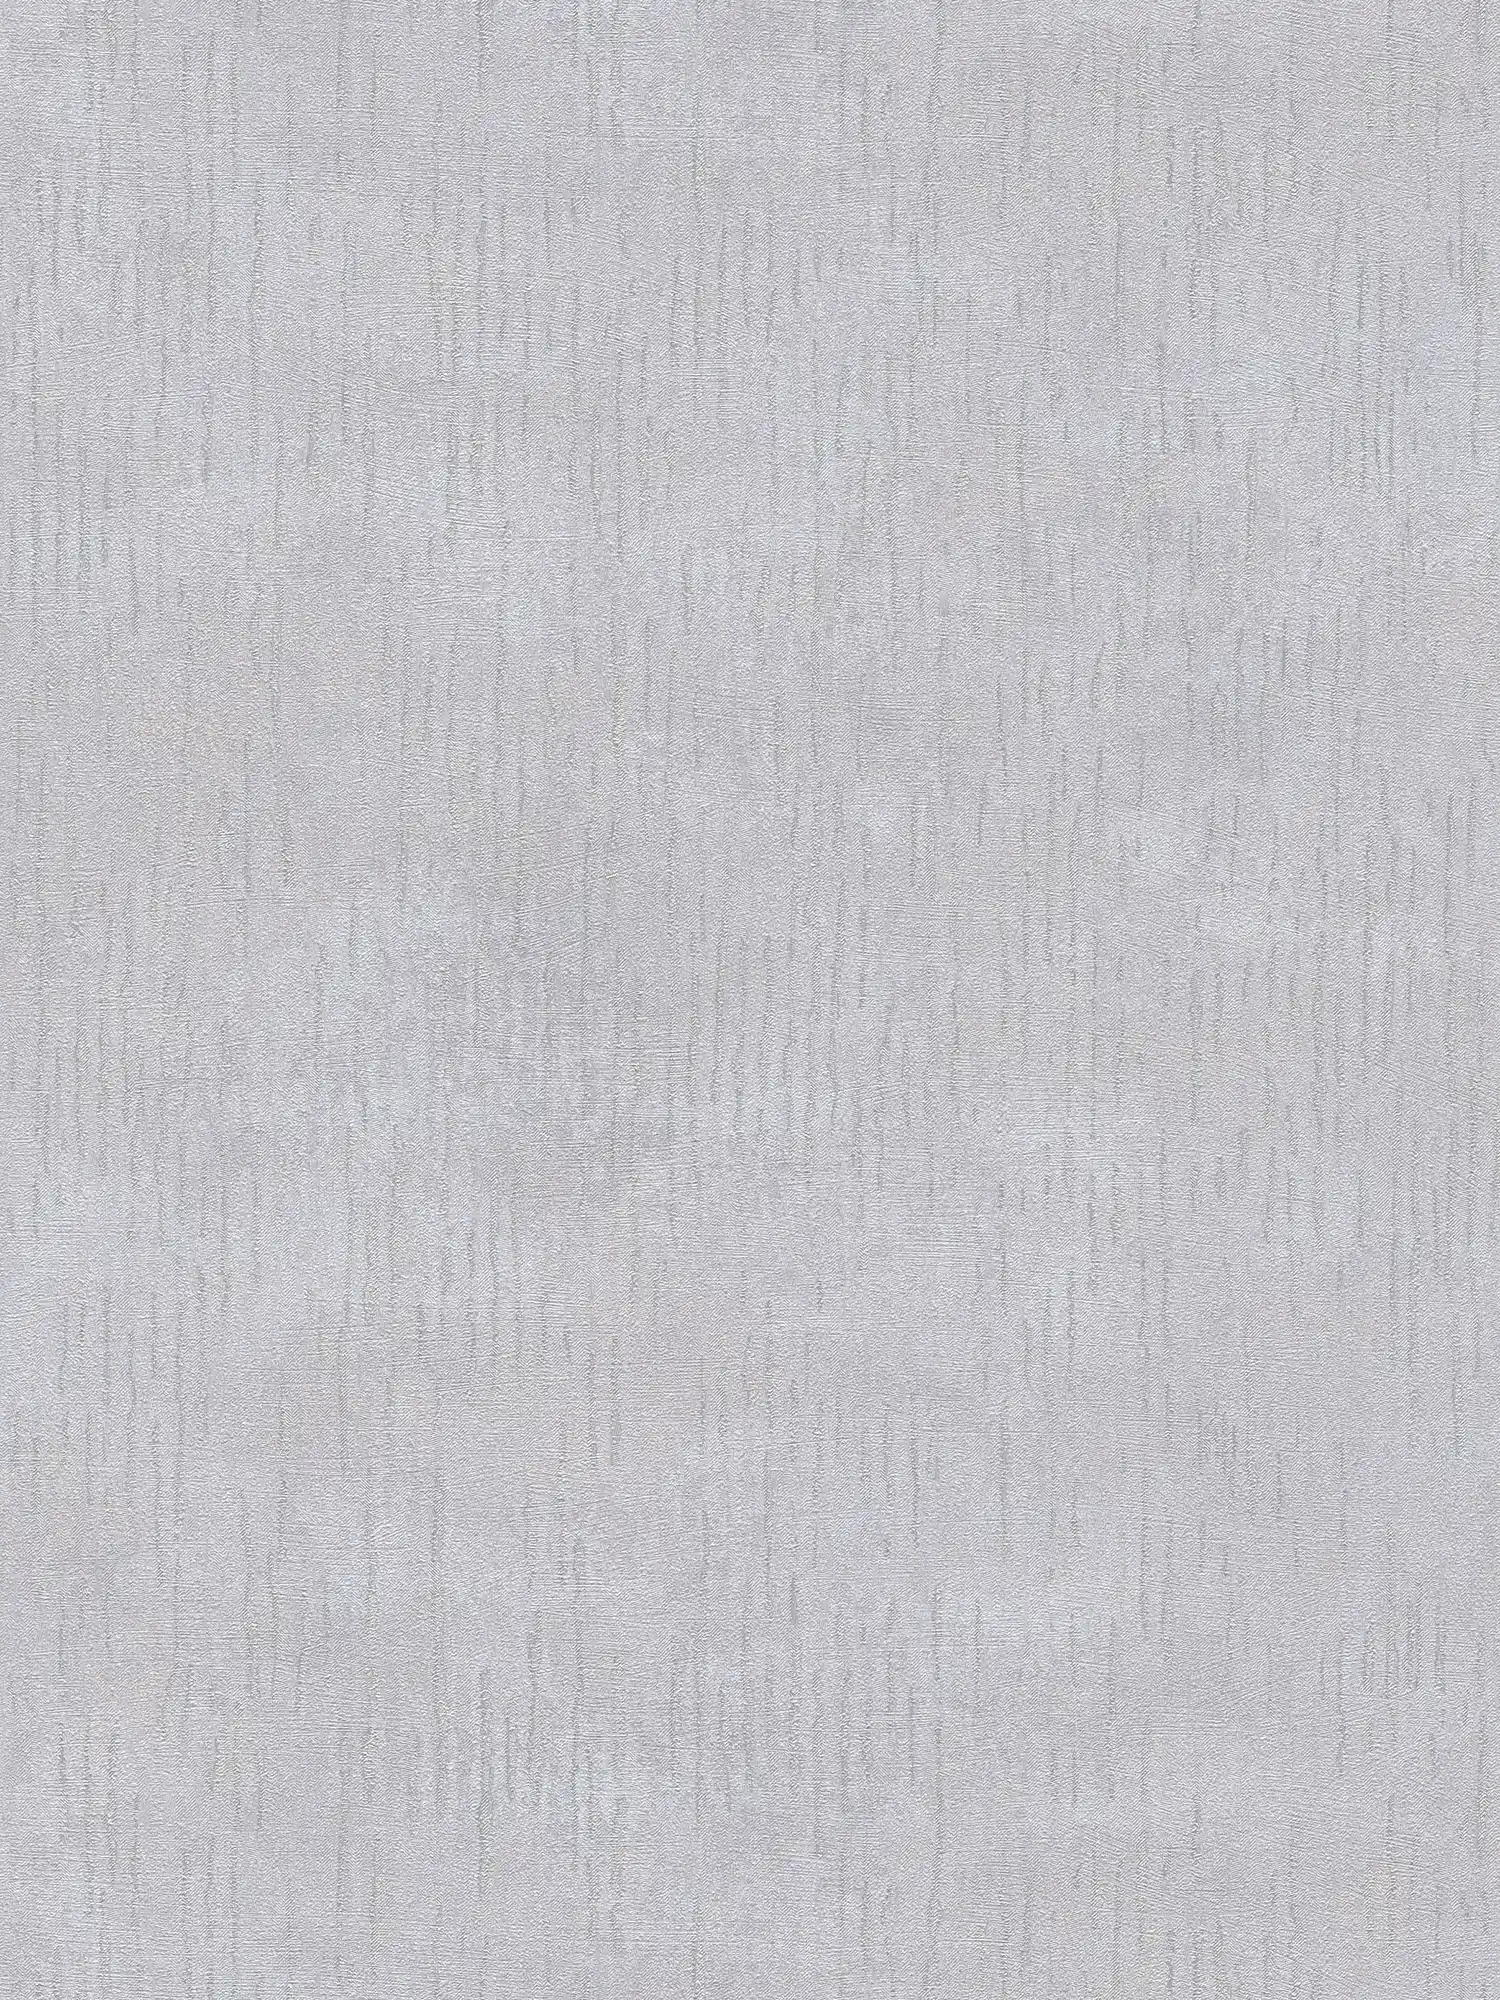 Gemusterte Glanz-Tapete mit Strukturdesign – Grau, Metallic
